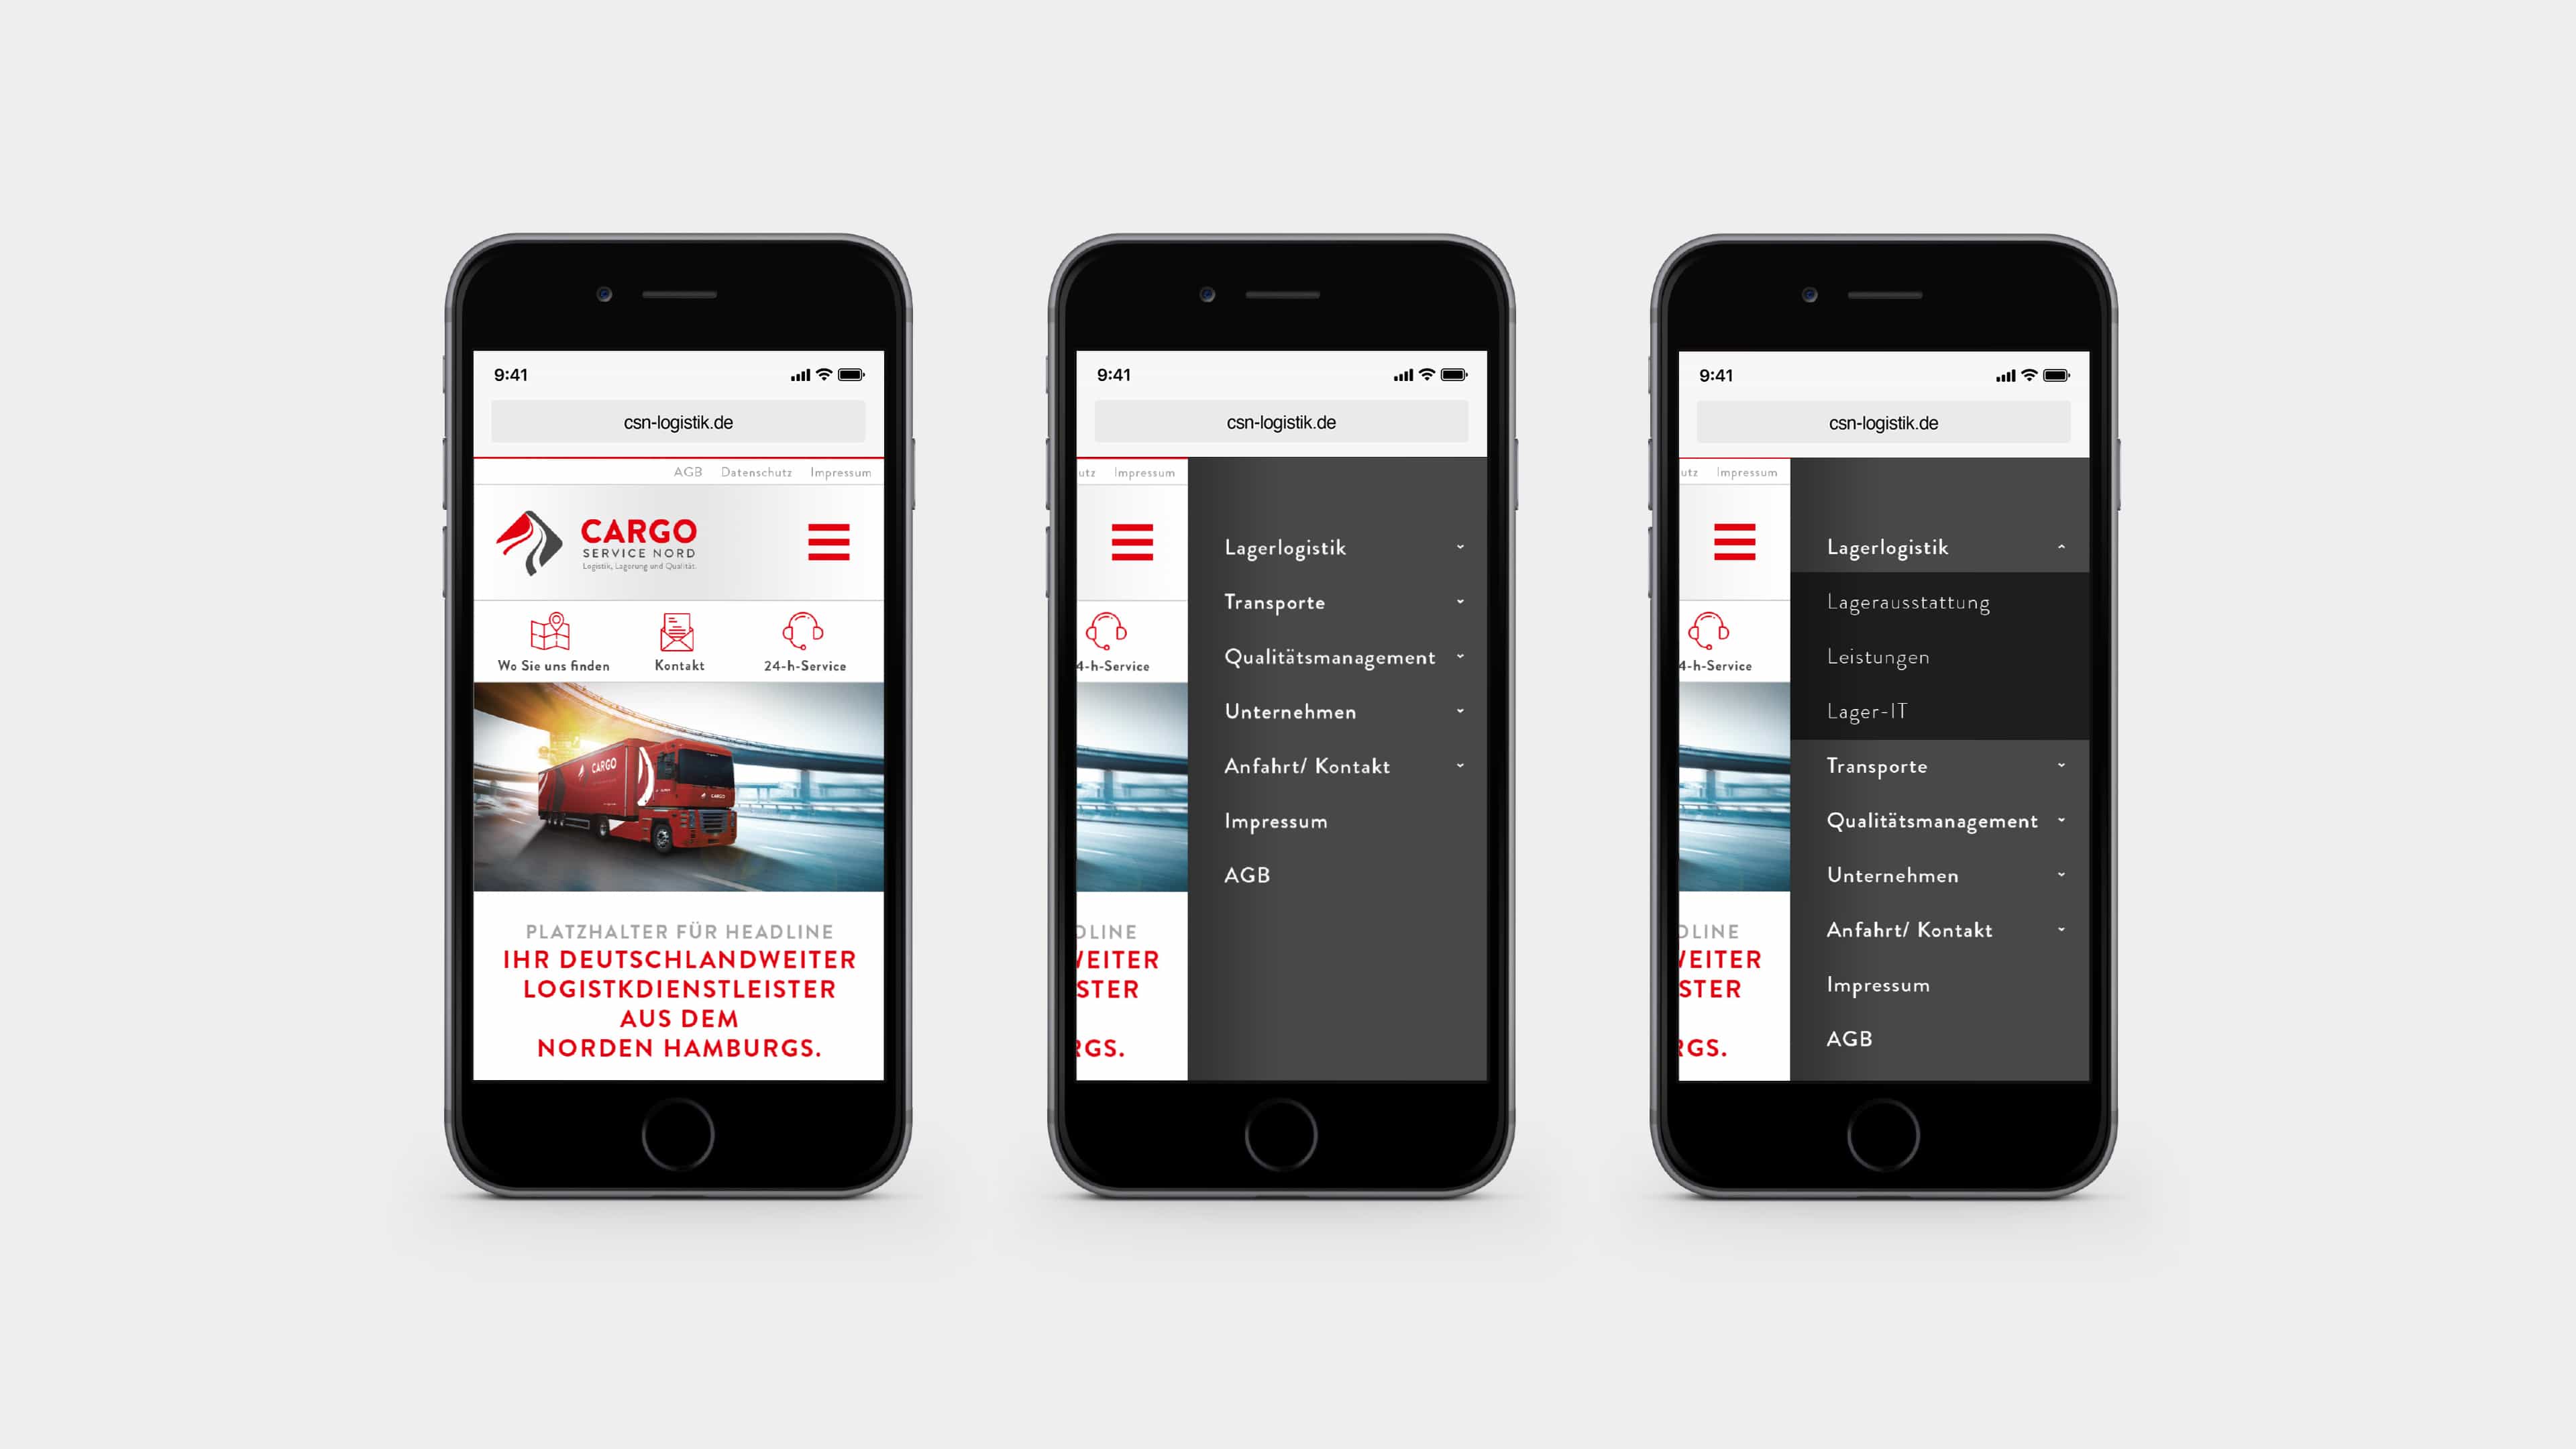 Drei Smartphones zeigen Startseite und Navigationsmenü von Cargo Service Nord 